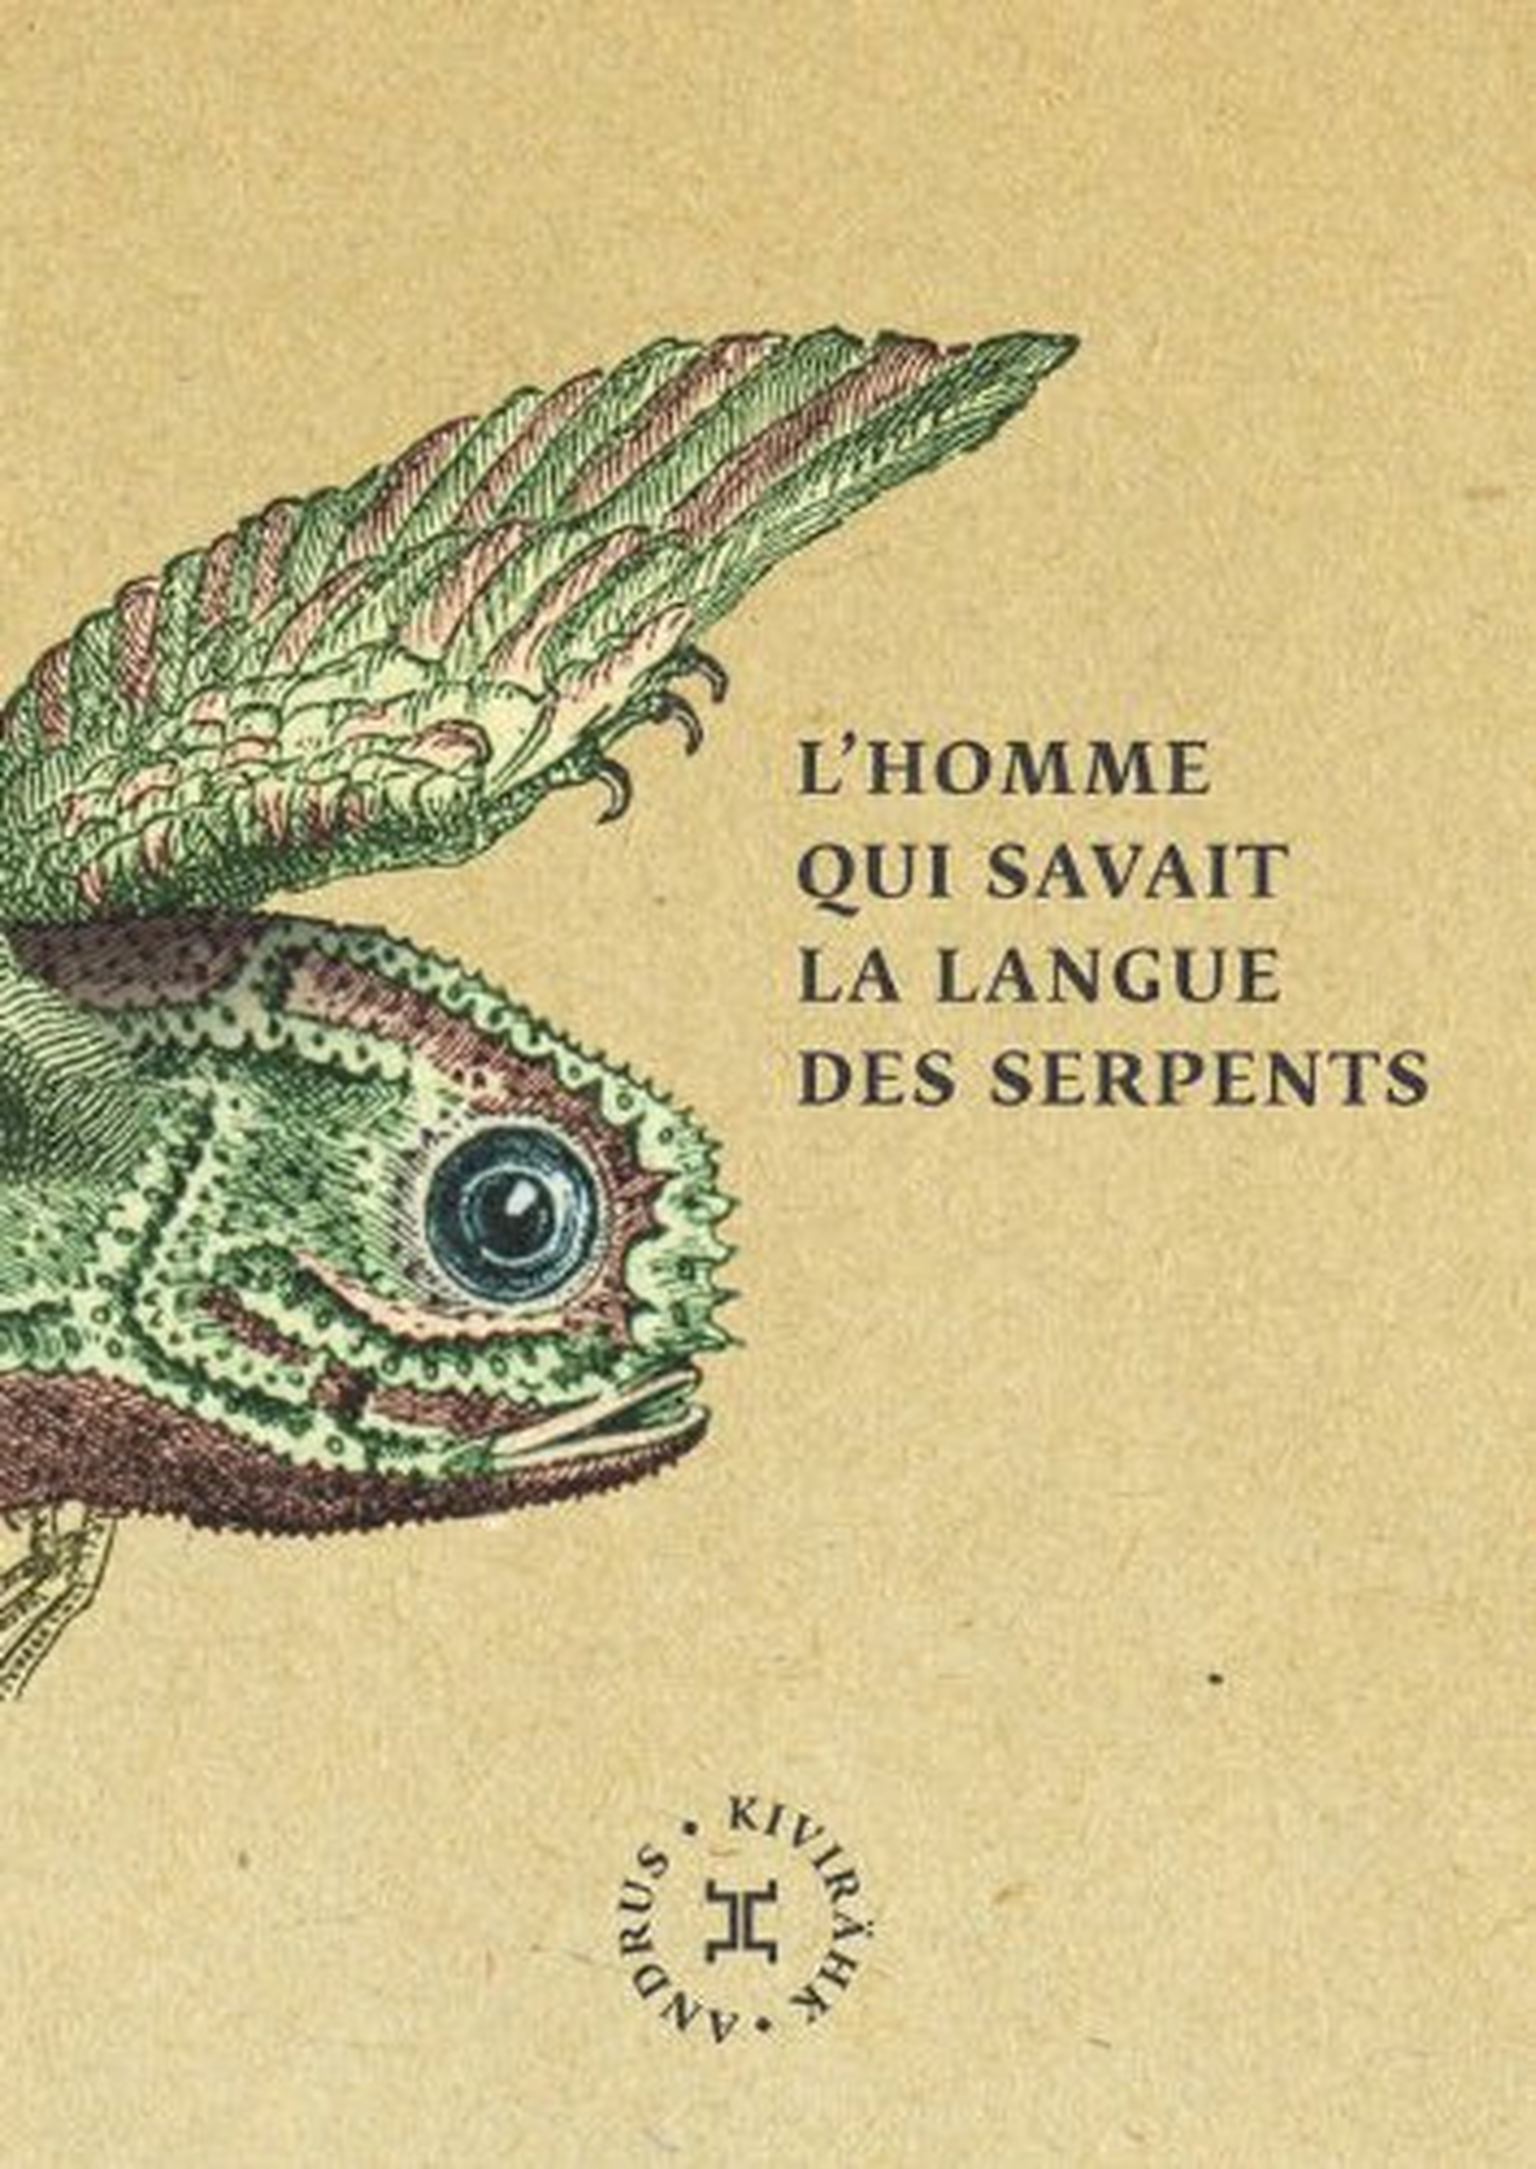 Romaani prantsuskeelse väljaande esikaas.